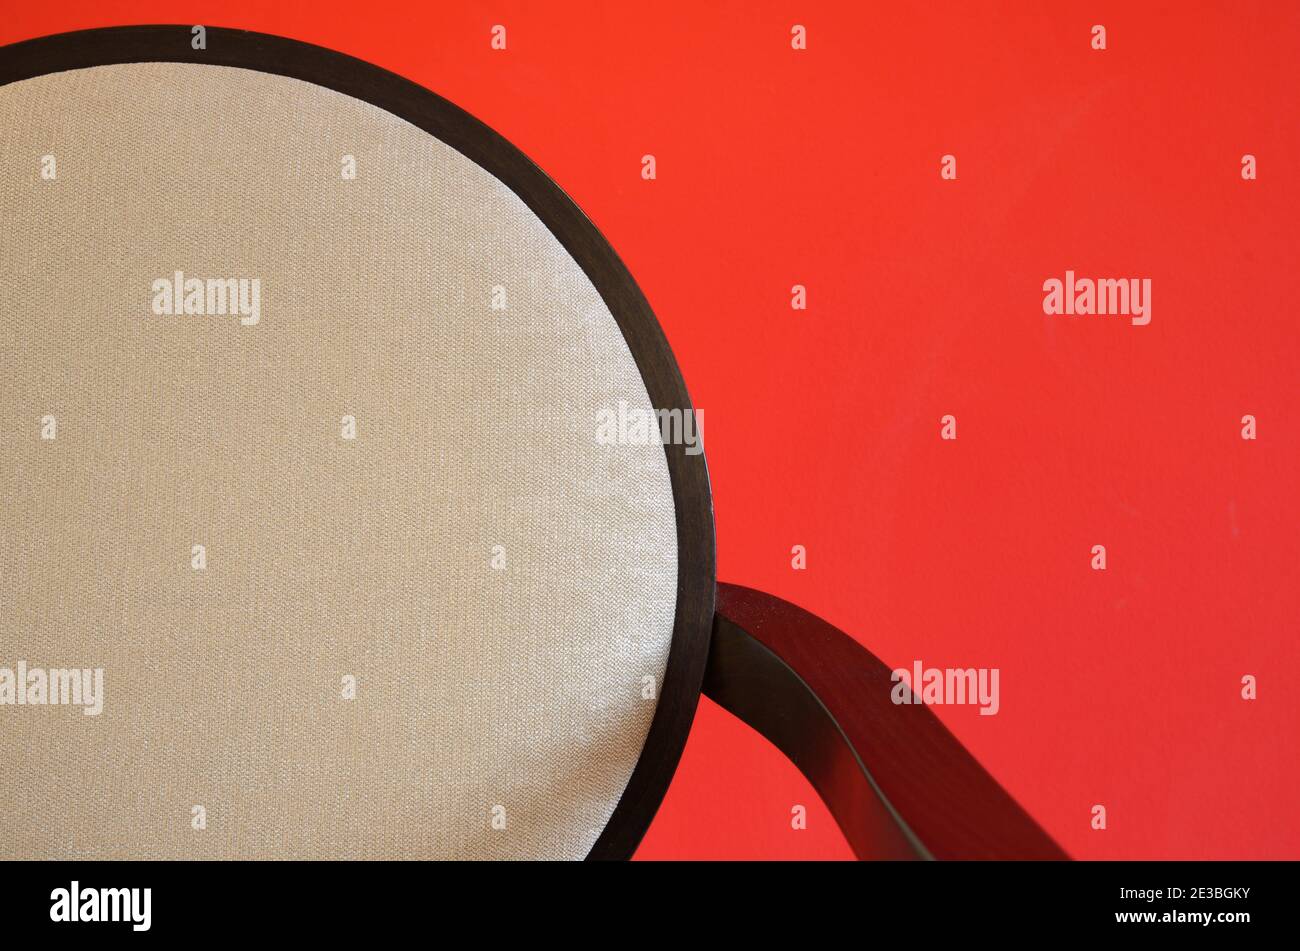 Dettaglio minimalista astratto della moderna sedia da pranzo con schienale rotondo Fotografato contro una parete rossa Foto Stock